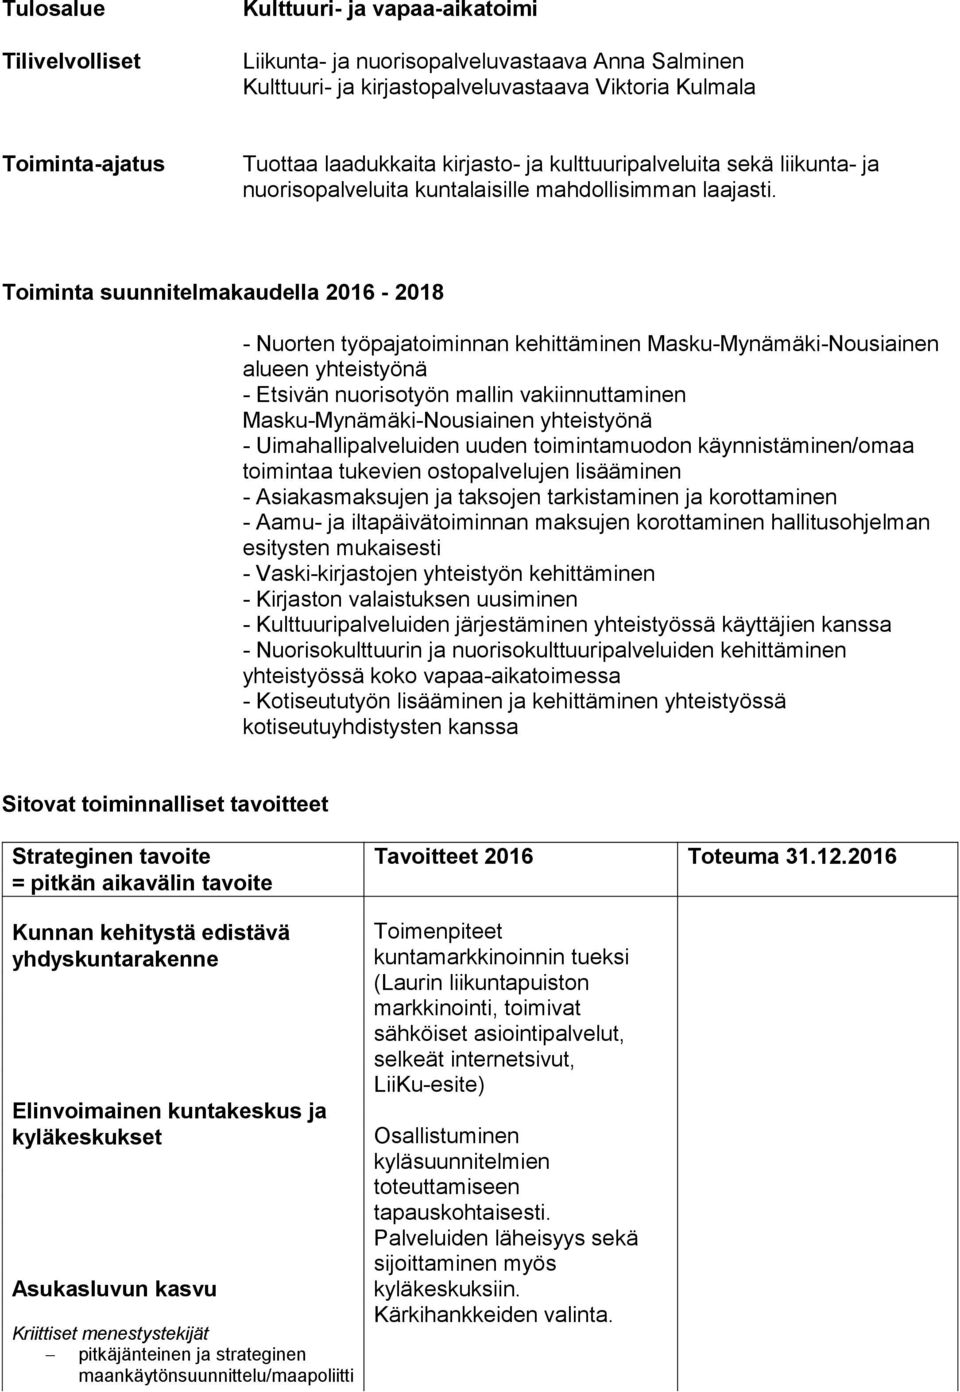 Toiminta suunnitelmakaudella 2016-2018 - Nuorten työpajatoiminnan kehittäminen Masku-Mynämäki-Nousiainen alueen yhteistyönä - Etsivän nuorisotyön mallin vakiinnuttaminen Masku-Mynämäki-Nousiainen